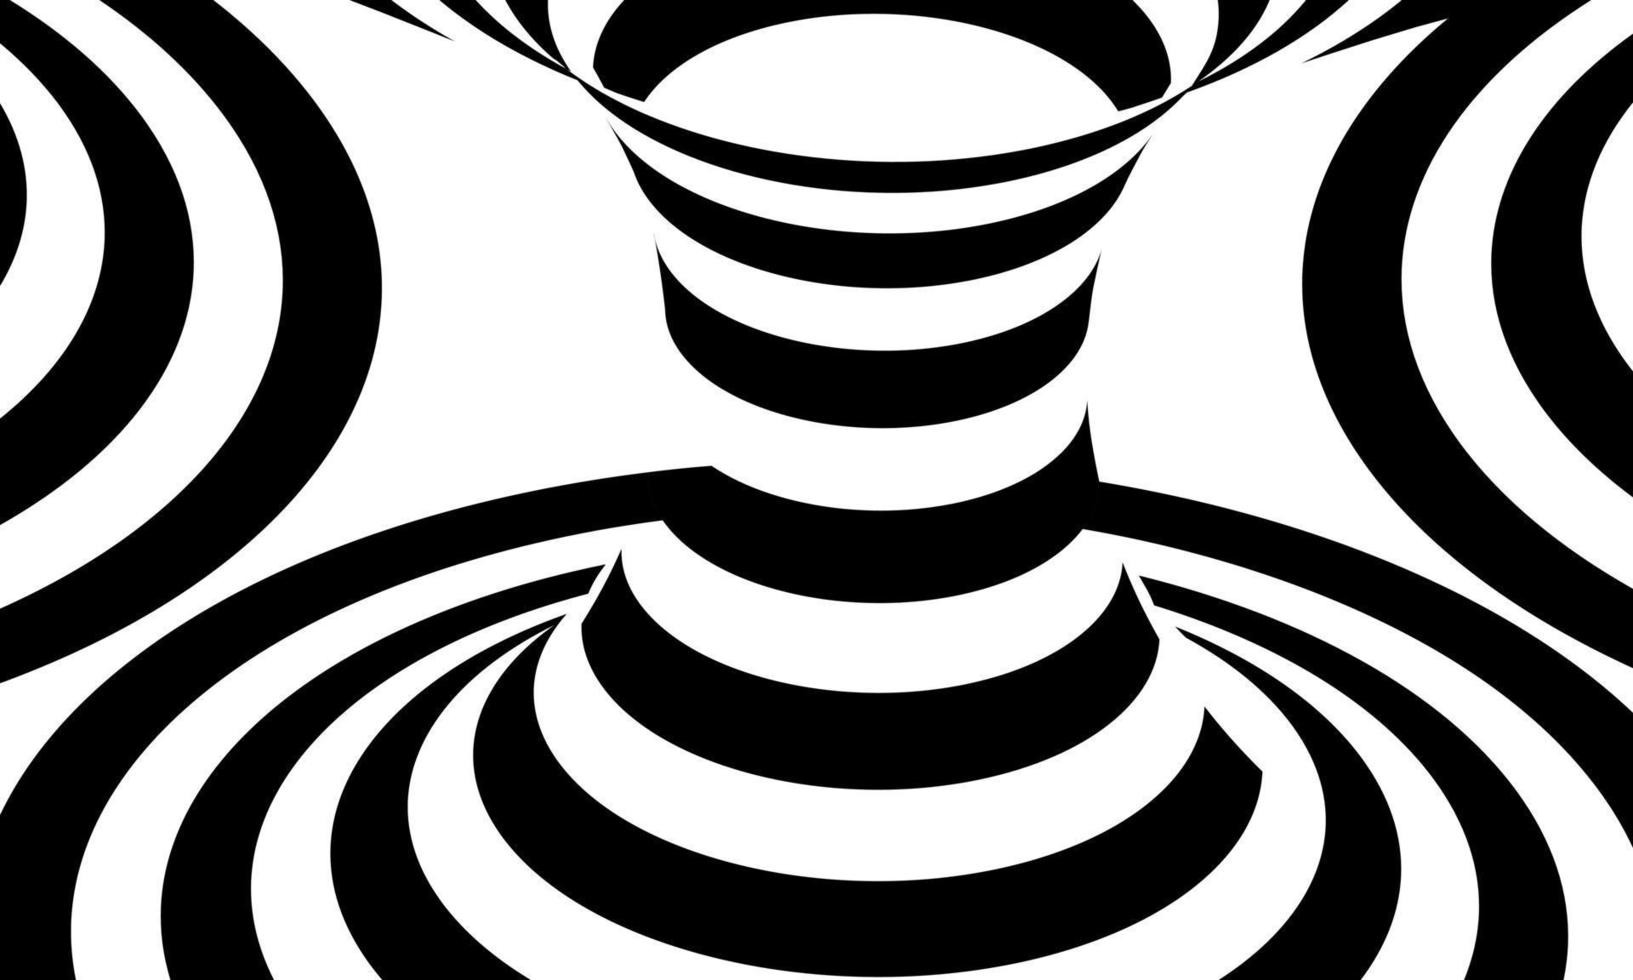 abstract patroon van zwarte en witte lijnen optische illusie vector illustratie achtergrond deel